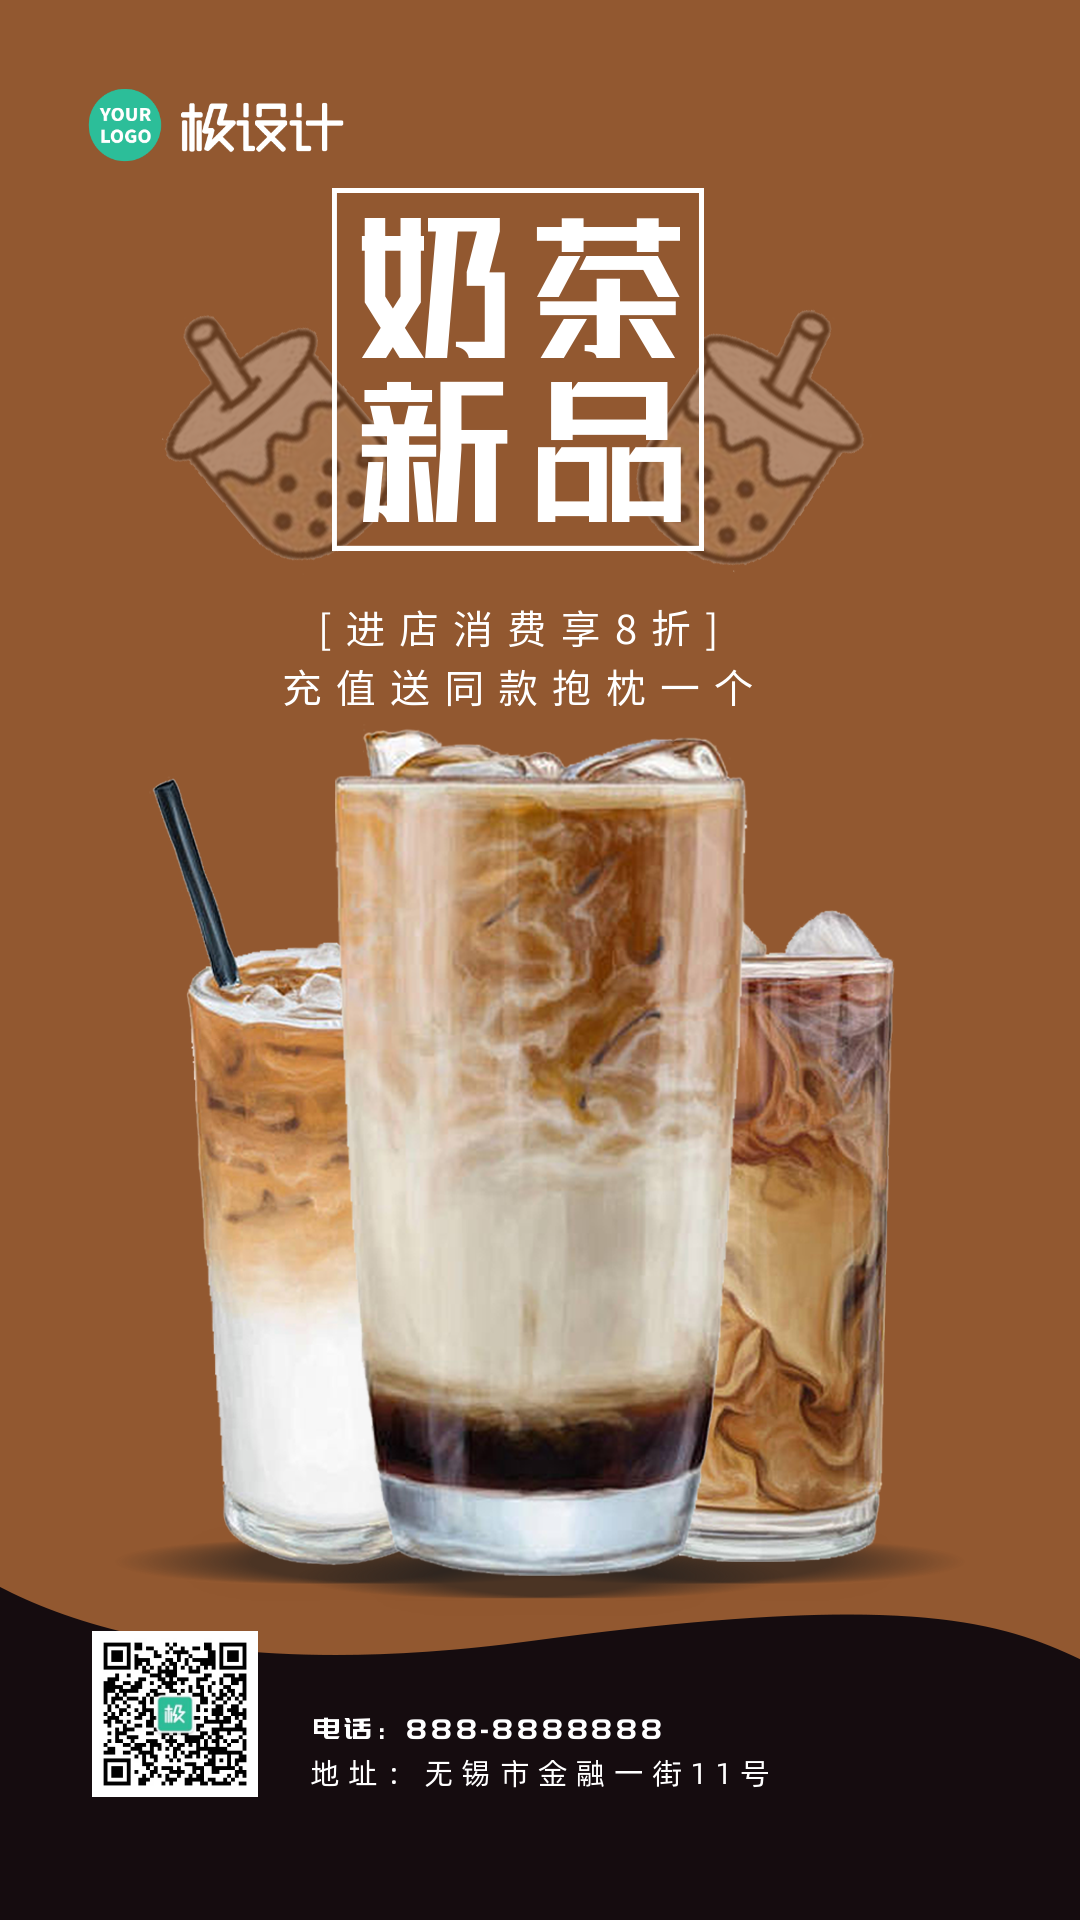 奶茶新品商业海报-竖